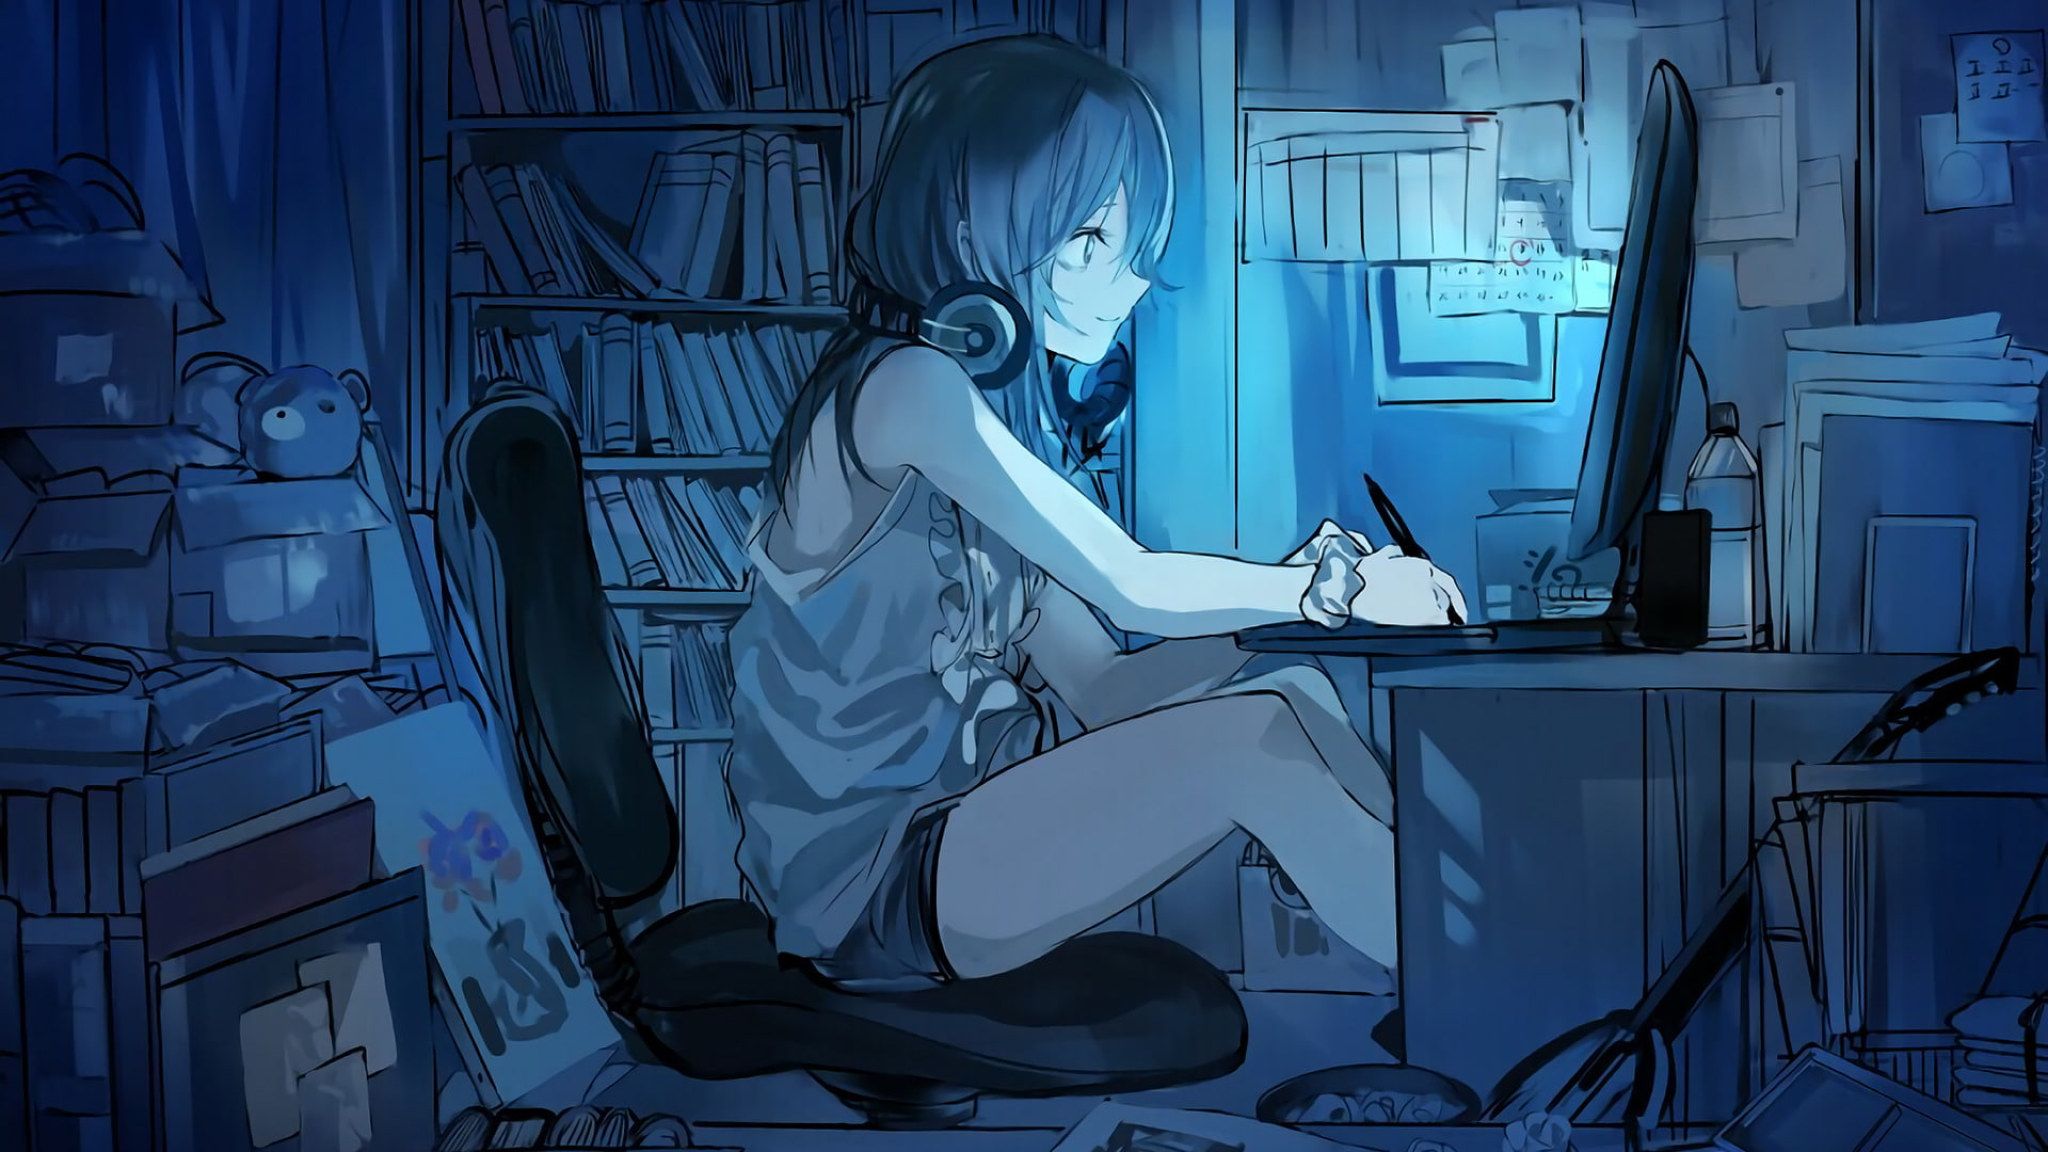 Art Wallpaper • Girl using computer anime character, Headphones, Original ( Anime) wallpaper • Wallpaper For You The Best Wallpaper For Desktop & Mobile